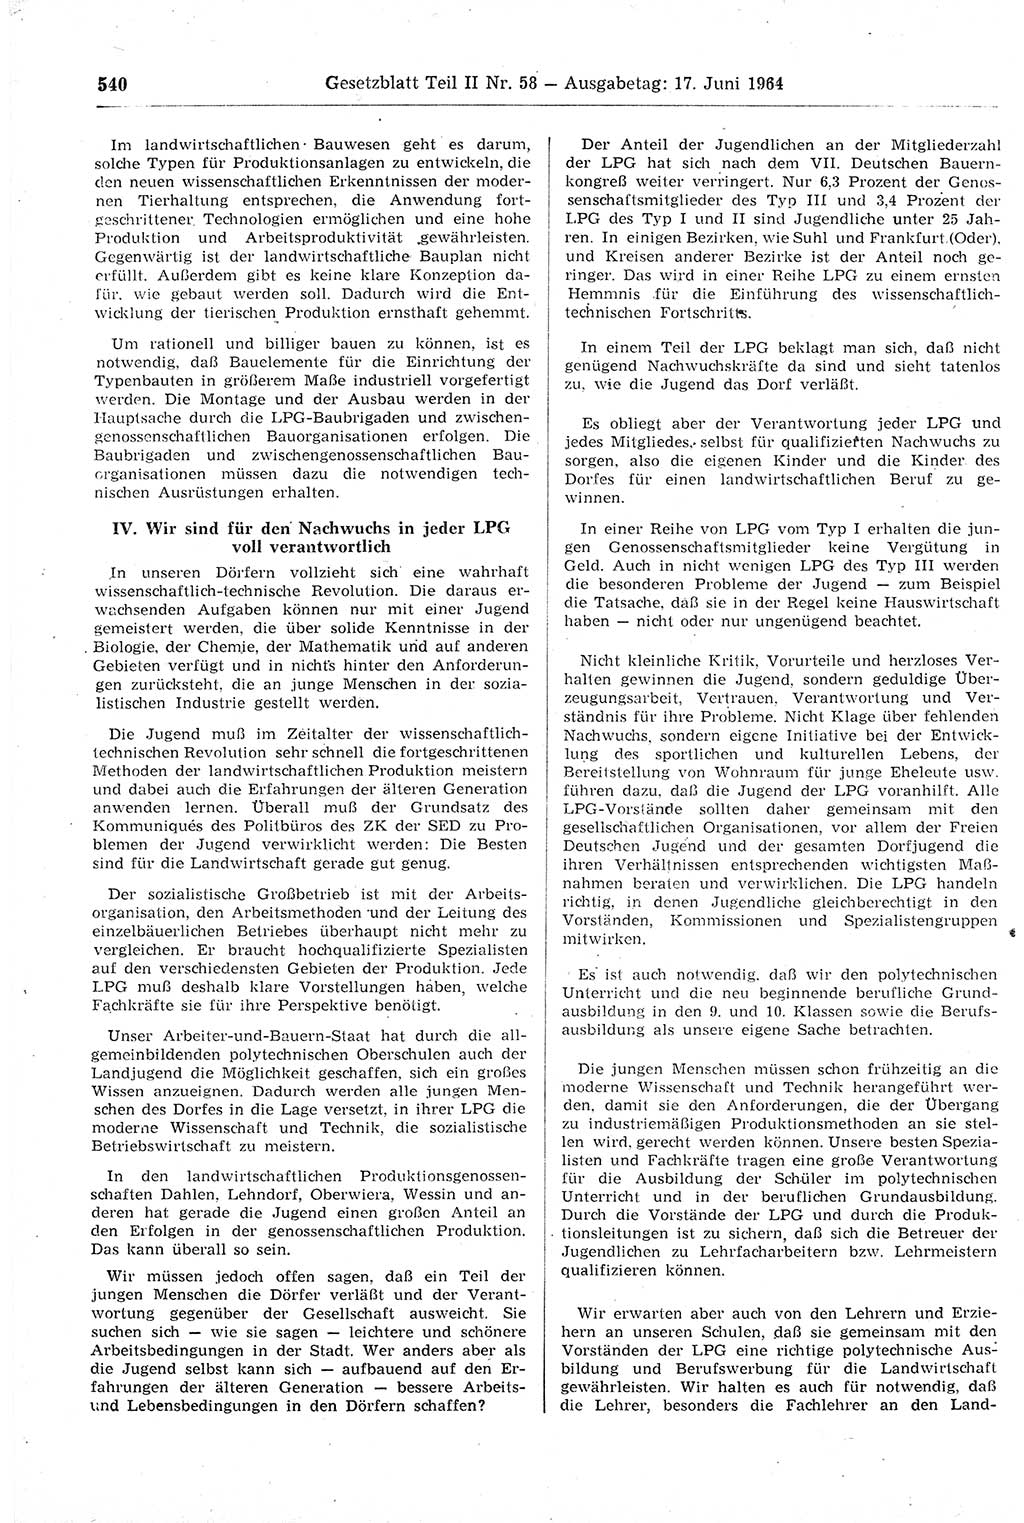 Gesetzblatt (GBl.) der Deutschen Demokratischen Republik (DDR) Teil ⅠⅠ 1964, Seite 540 (GBl. DDR ⅠⅠ 1964, S. 540)